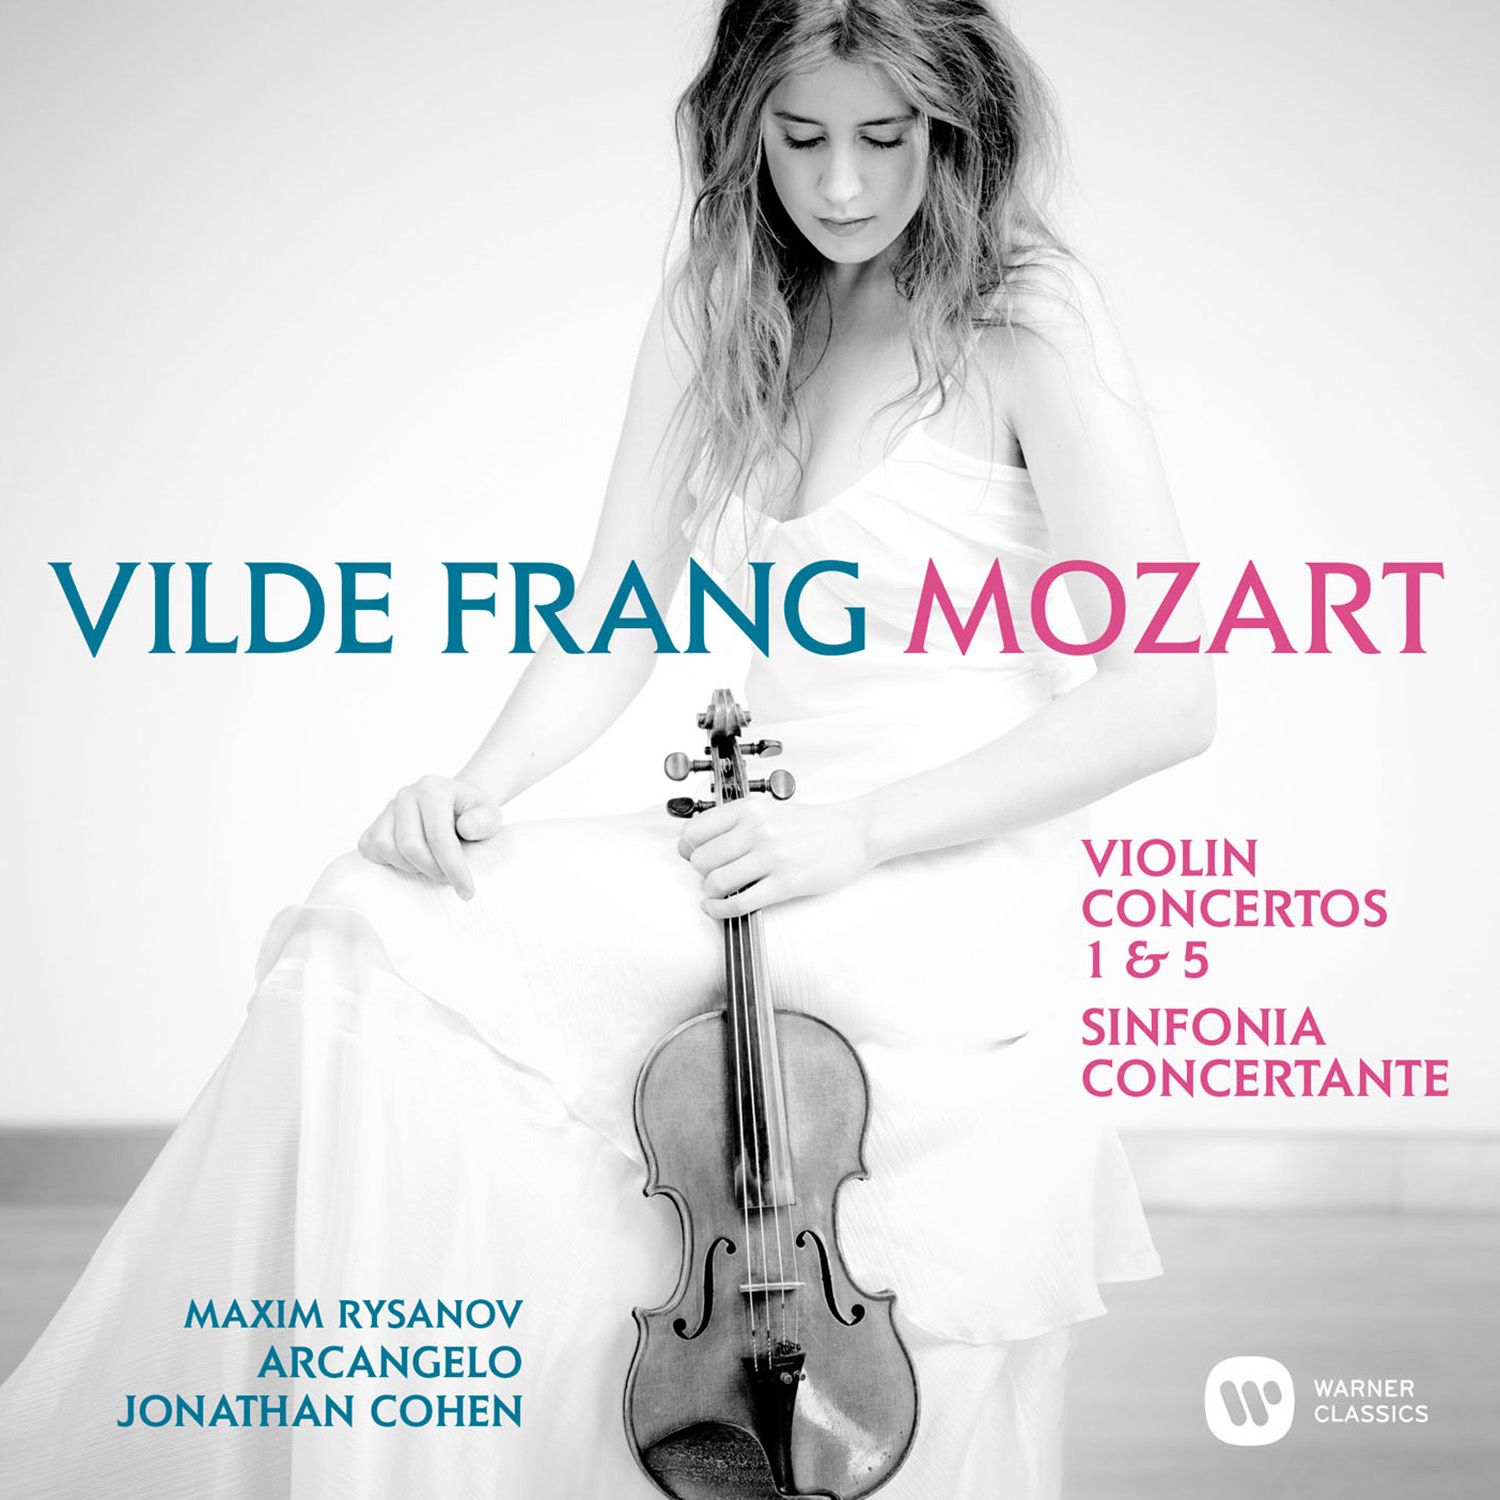 Violin Concerto No. 1 in B-Flat Major, K. 207:I. Allegro moderato (Cadenzas - Cohen)